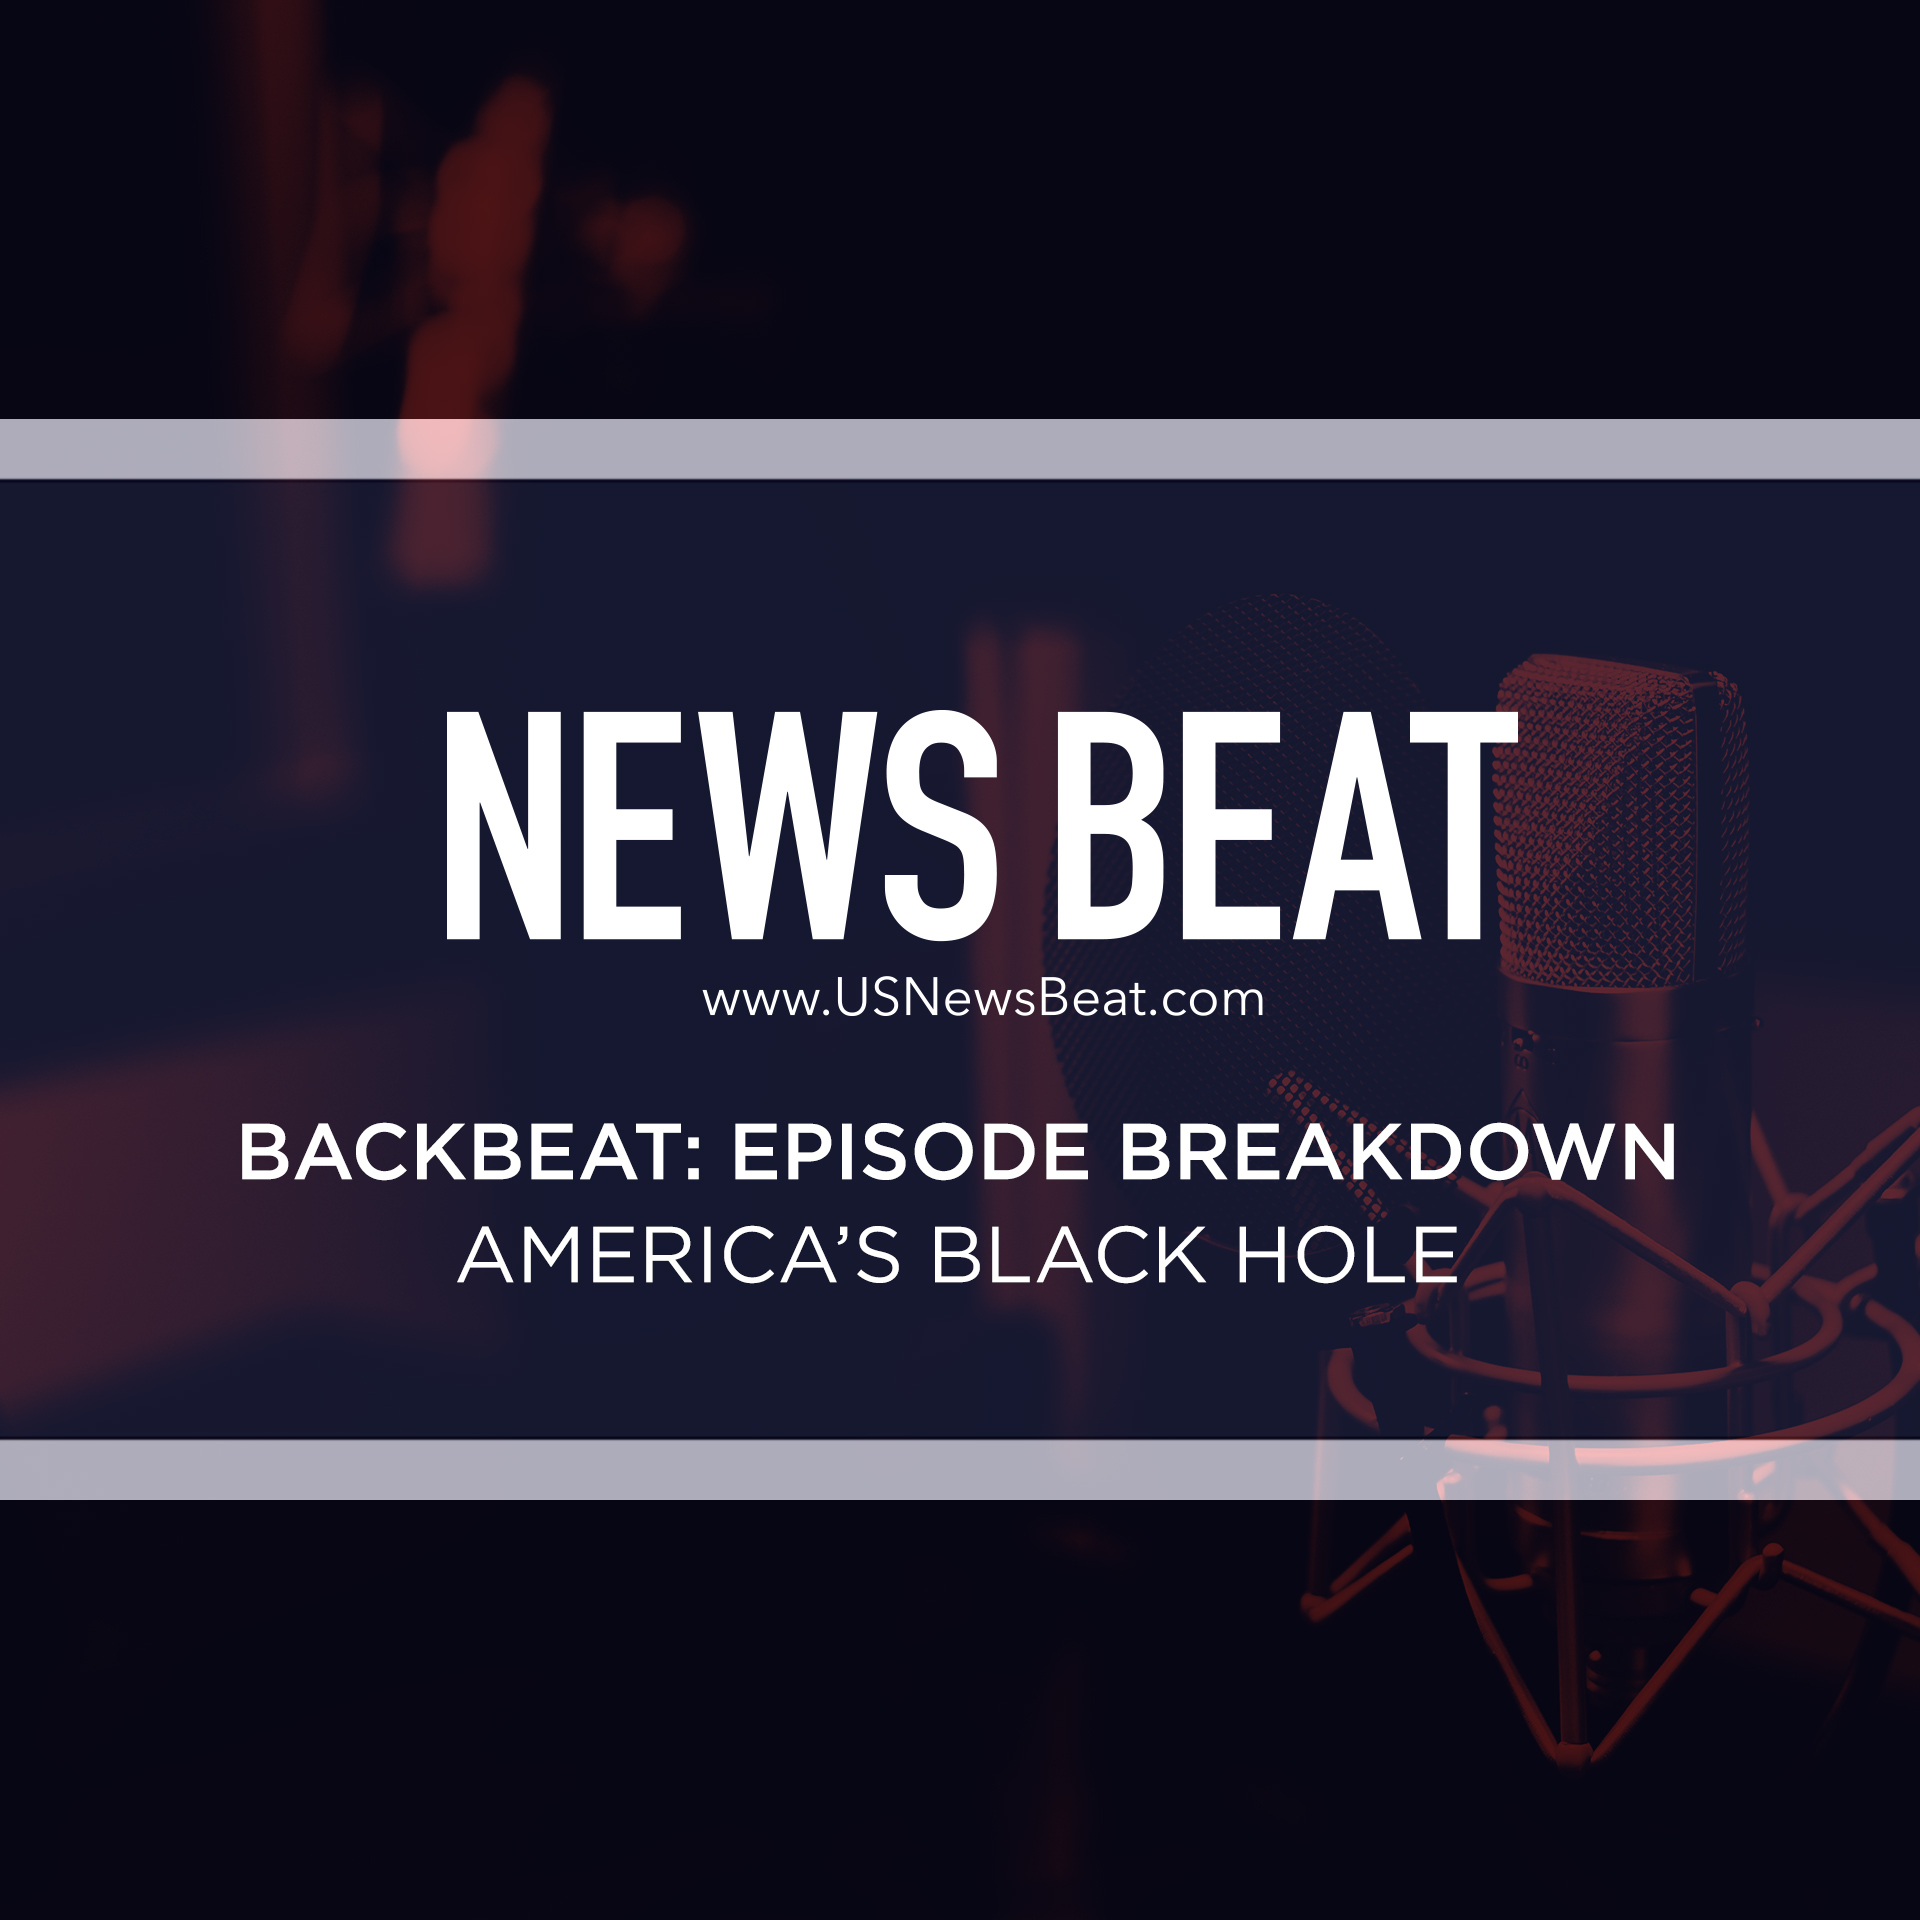 BackBeat Episode Breakdown: America's Black Hole